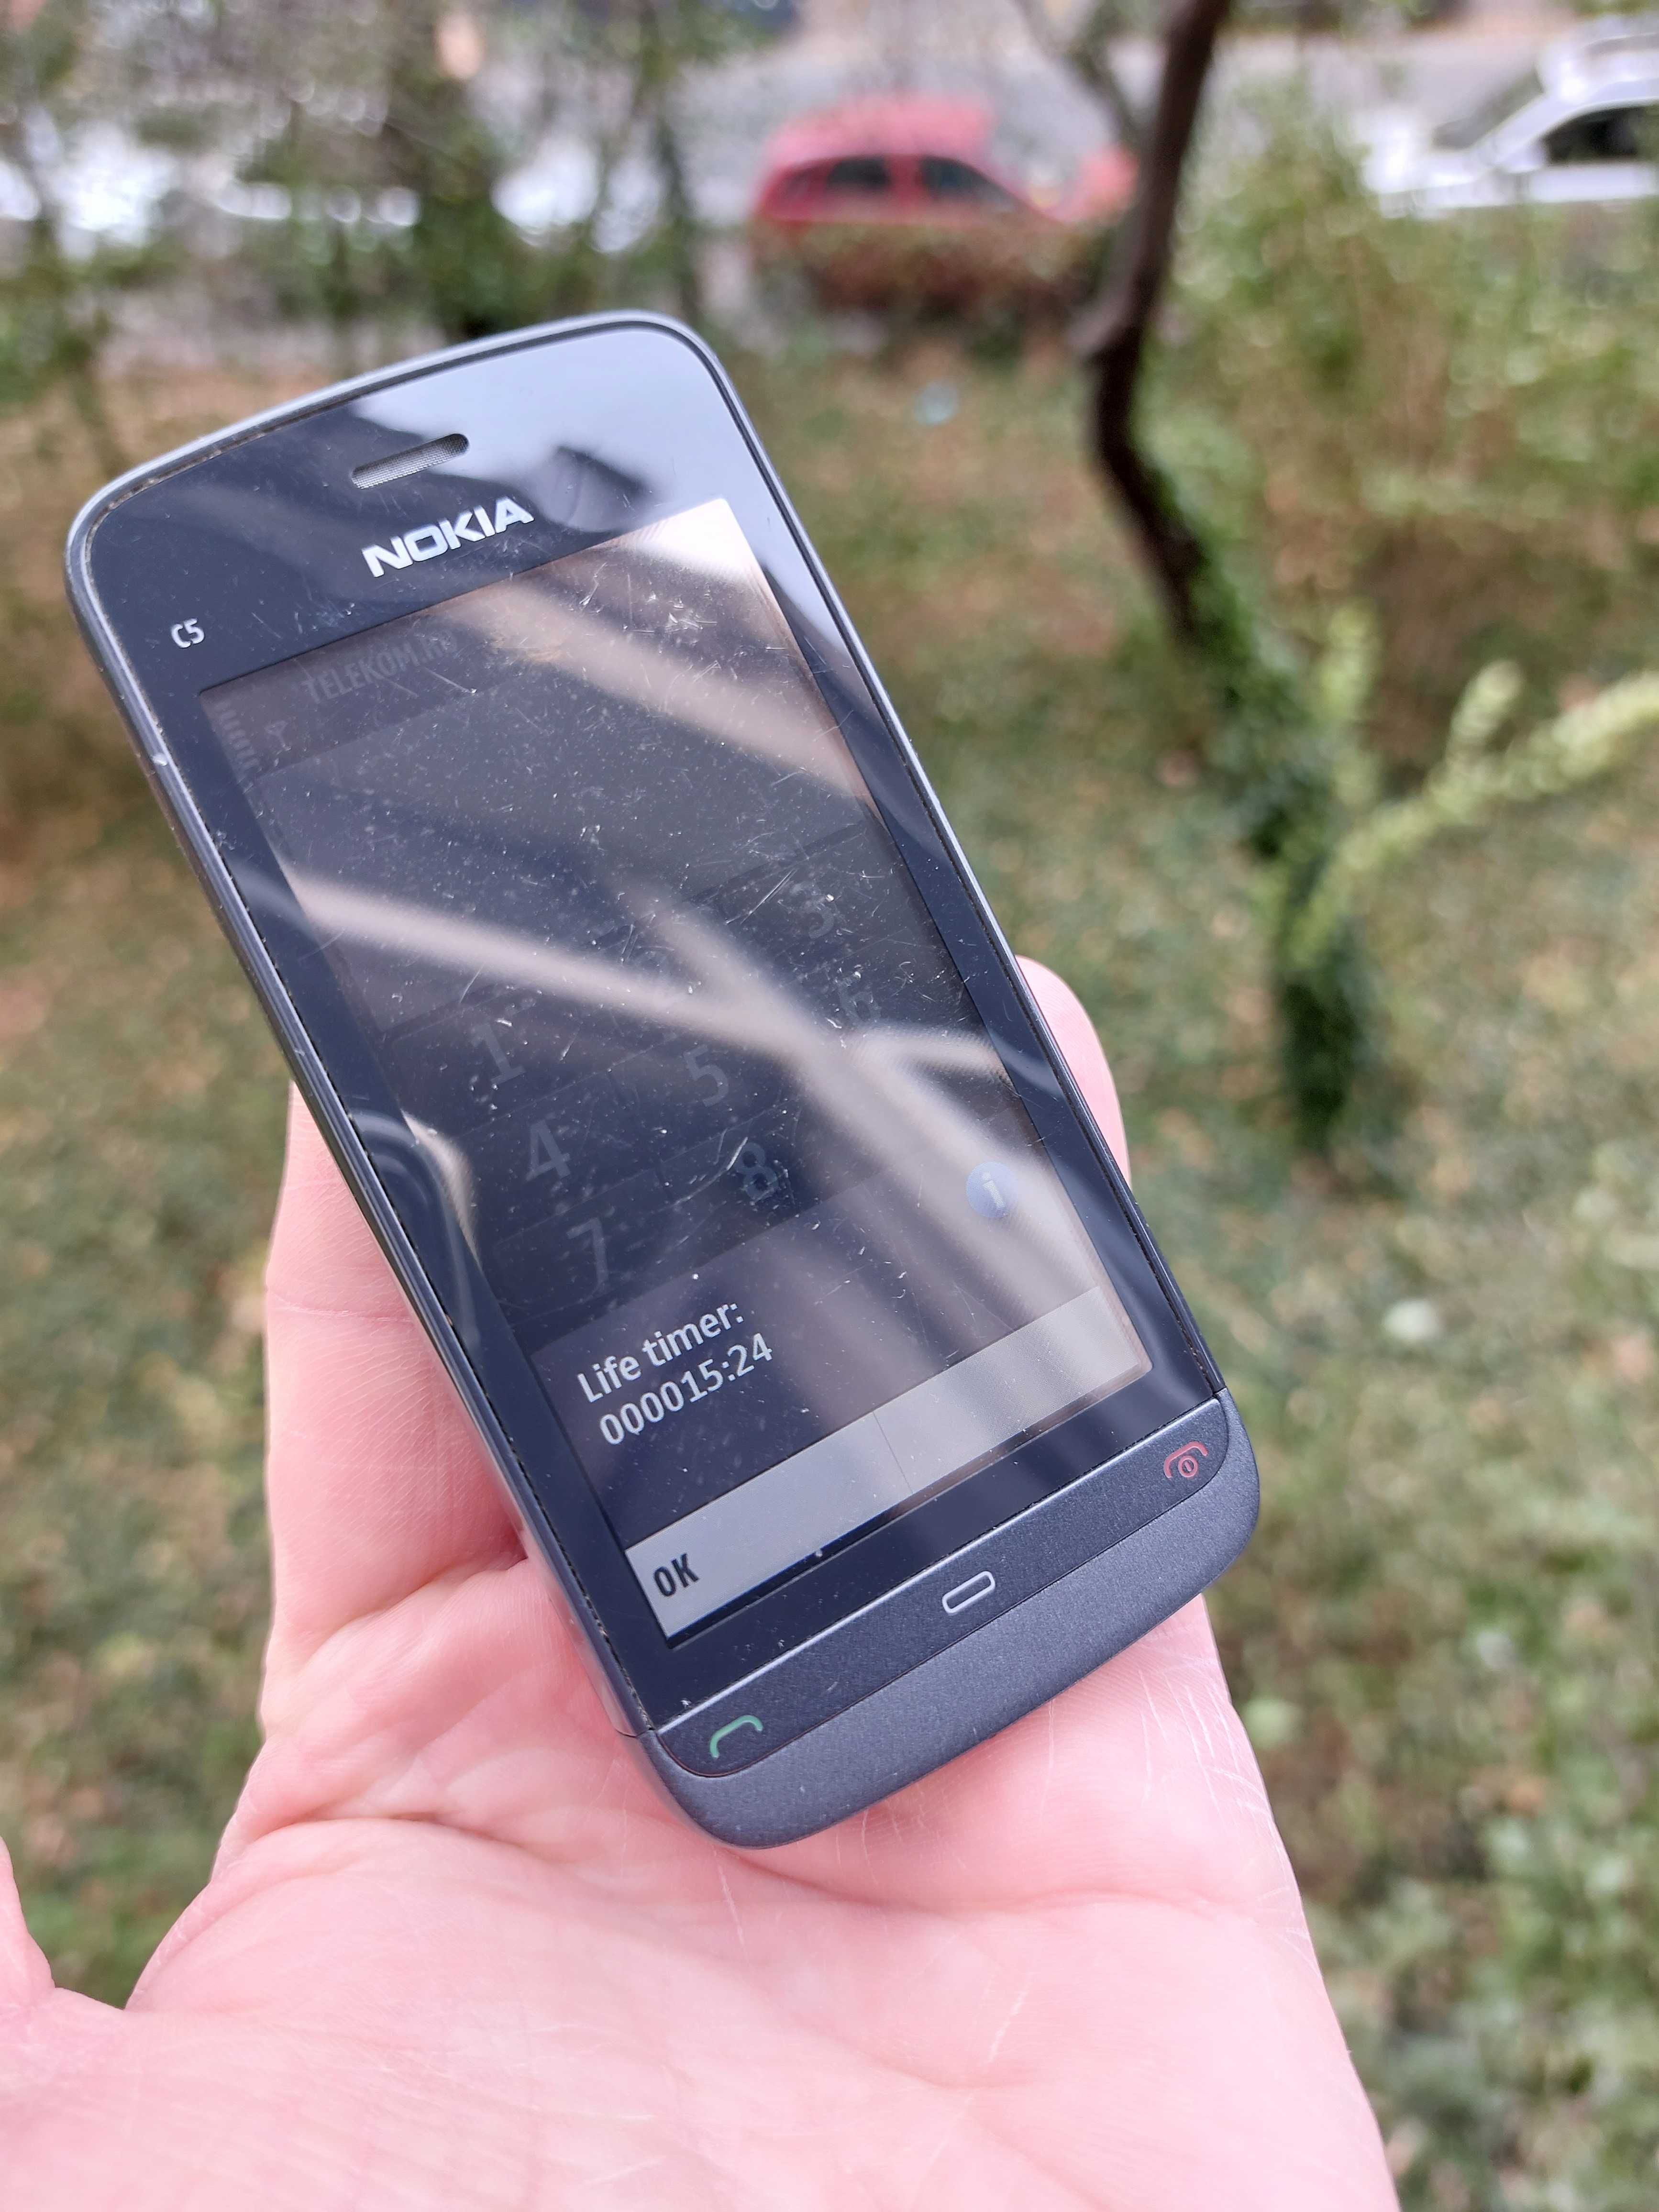 Nokia C5 original Hungary decodat 2010 cu doar 15 ore vorbit pe el